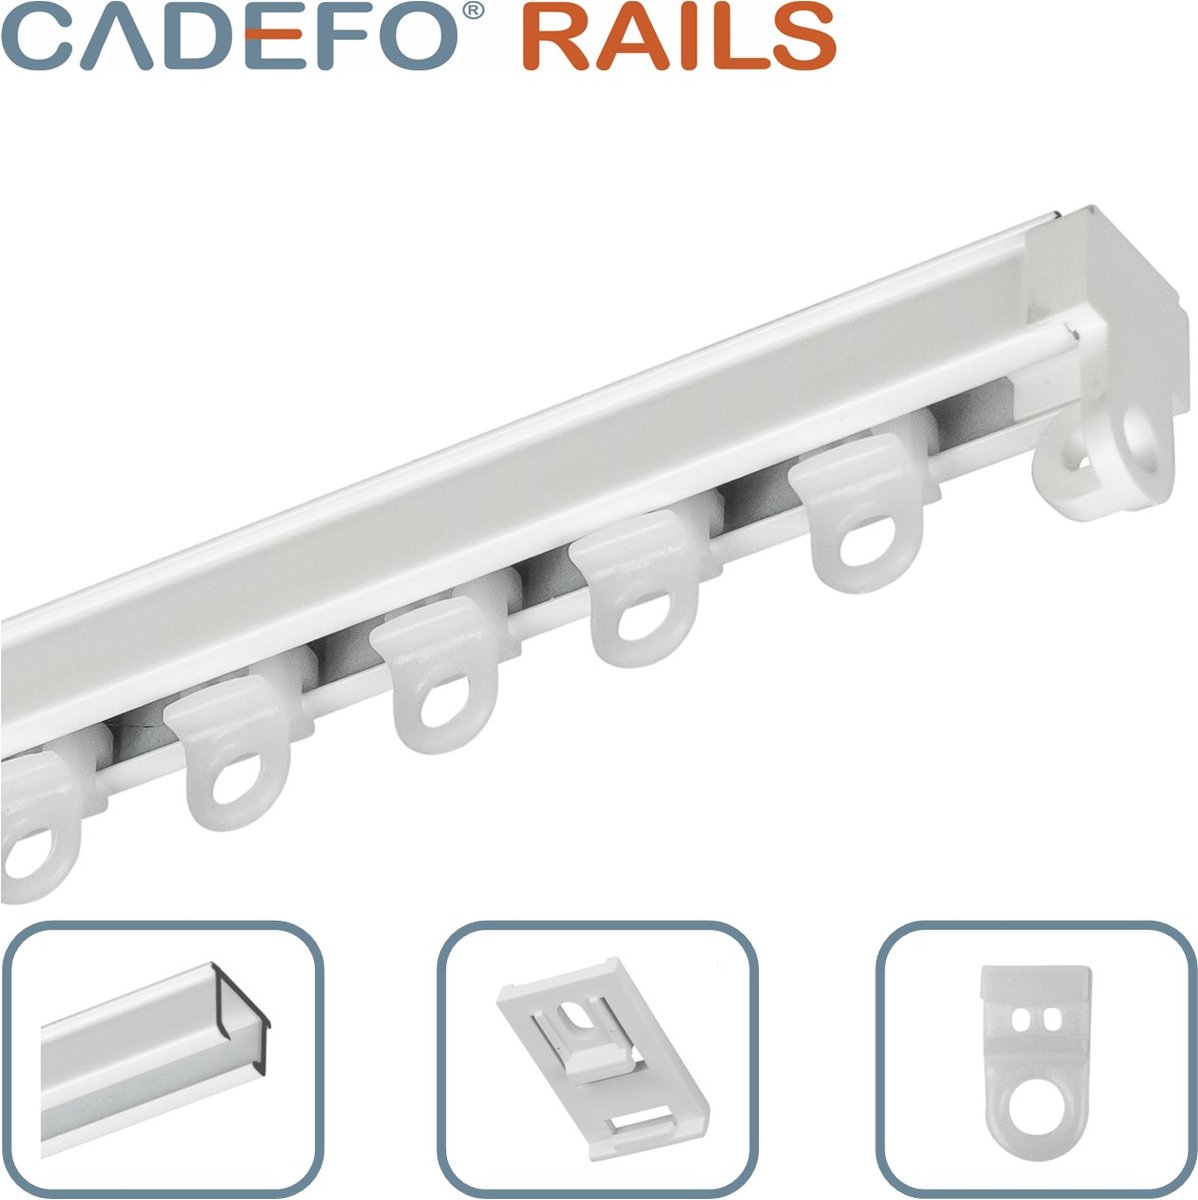 CADEFO RAILS (551 - 600 cm) Gordijnrails - Compleet op maat! - UIT 1 STUK - Leverbaar tot 6 meter - Plafondbevestiging - Lengte 551 cm